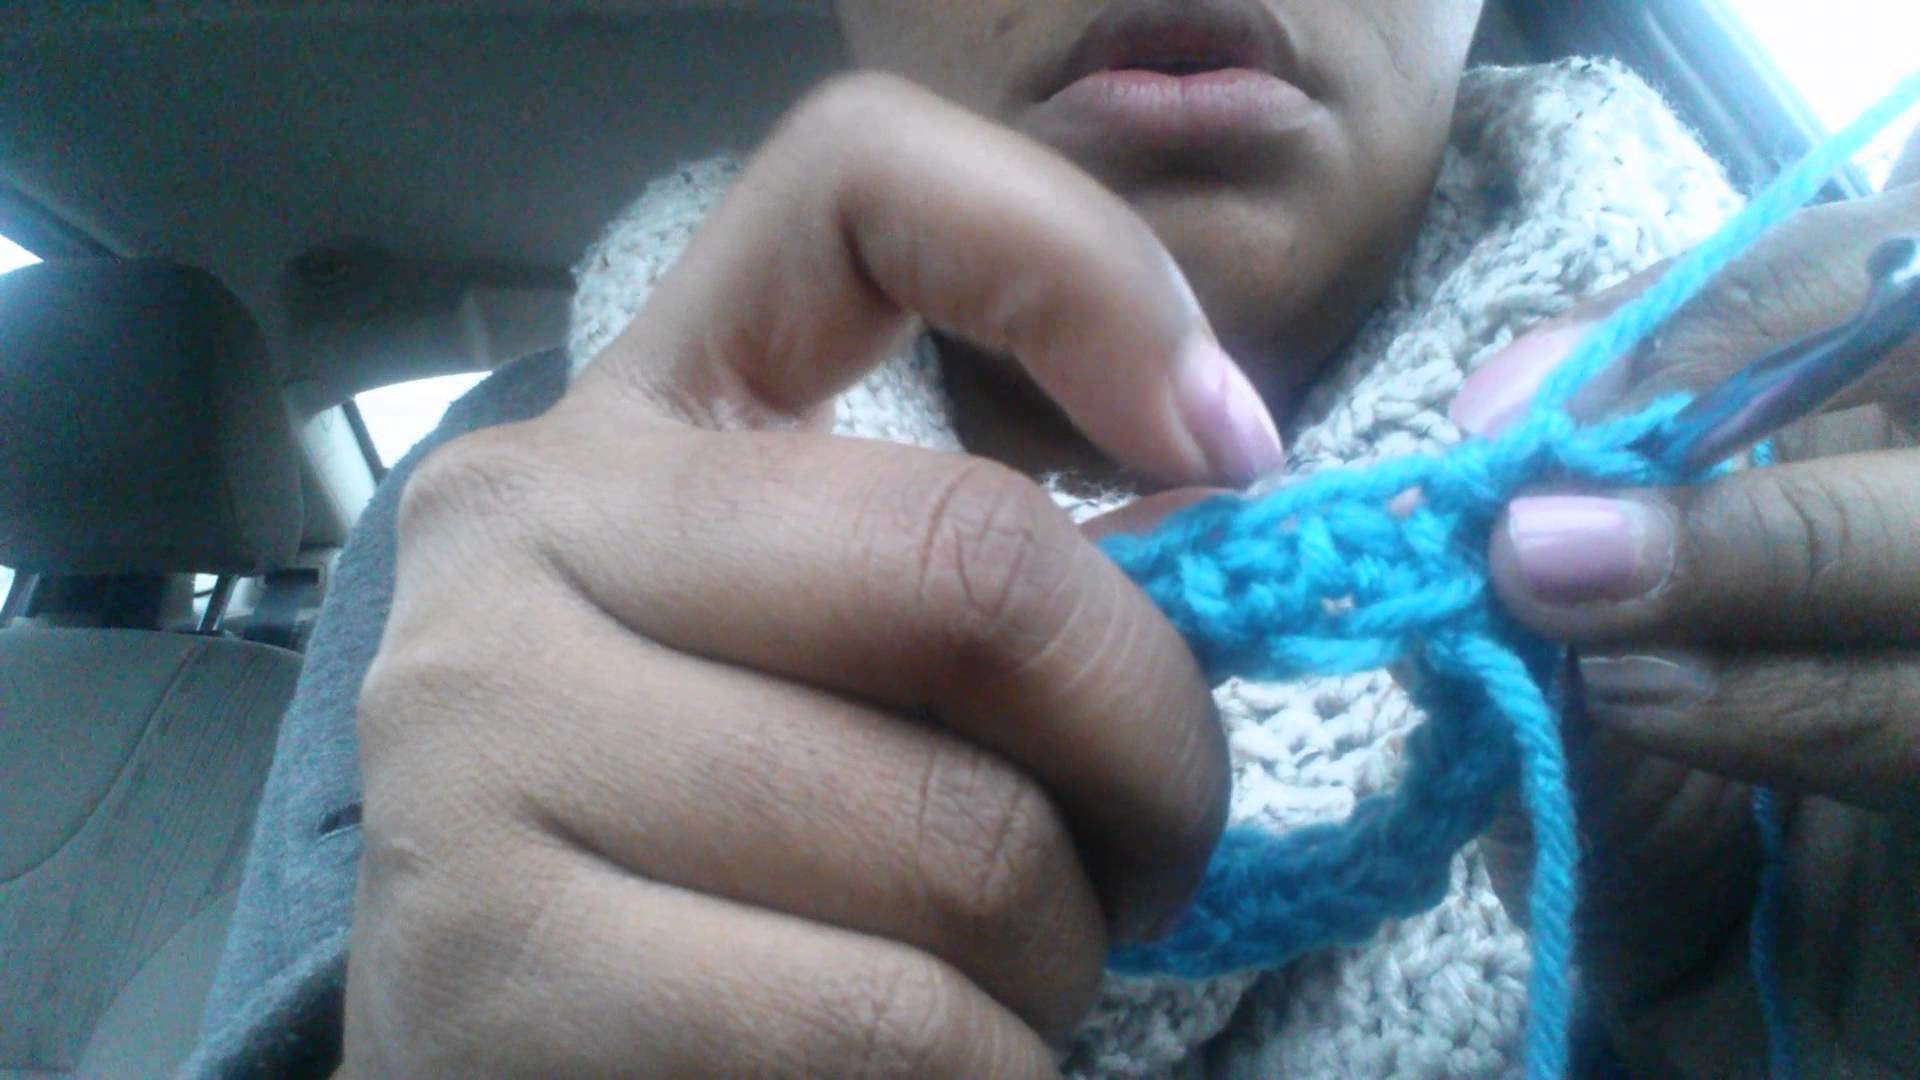 Crochet mittens